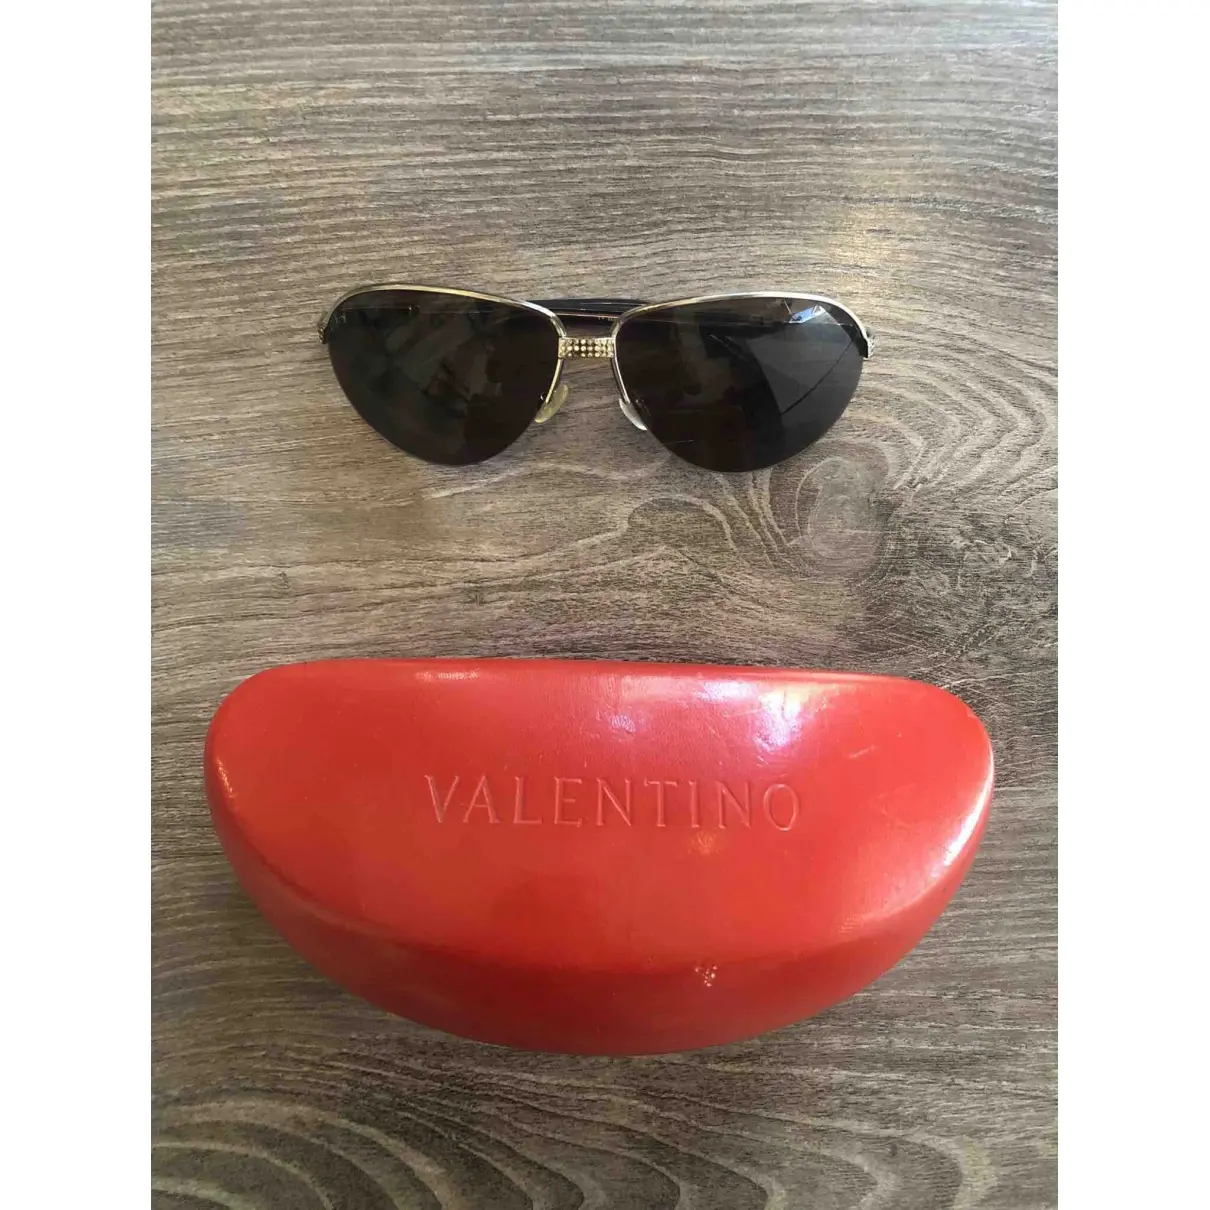 Valentino Garavani Aviator sunglasses for sale